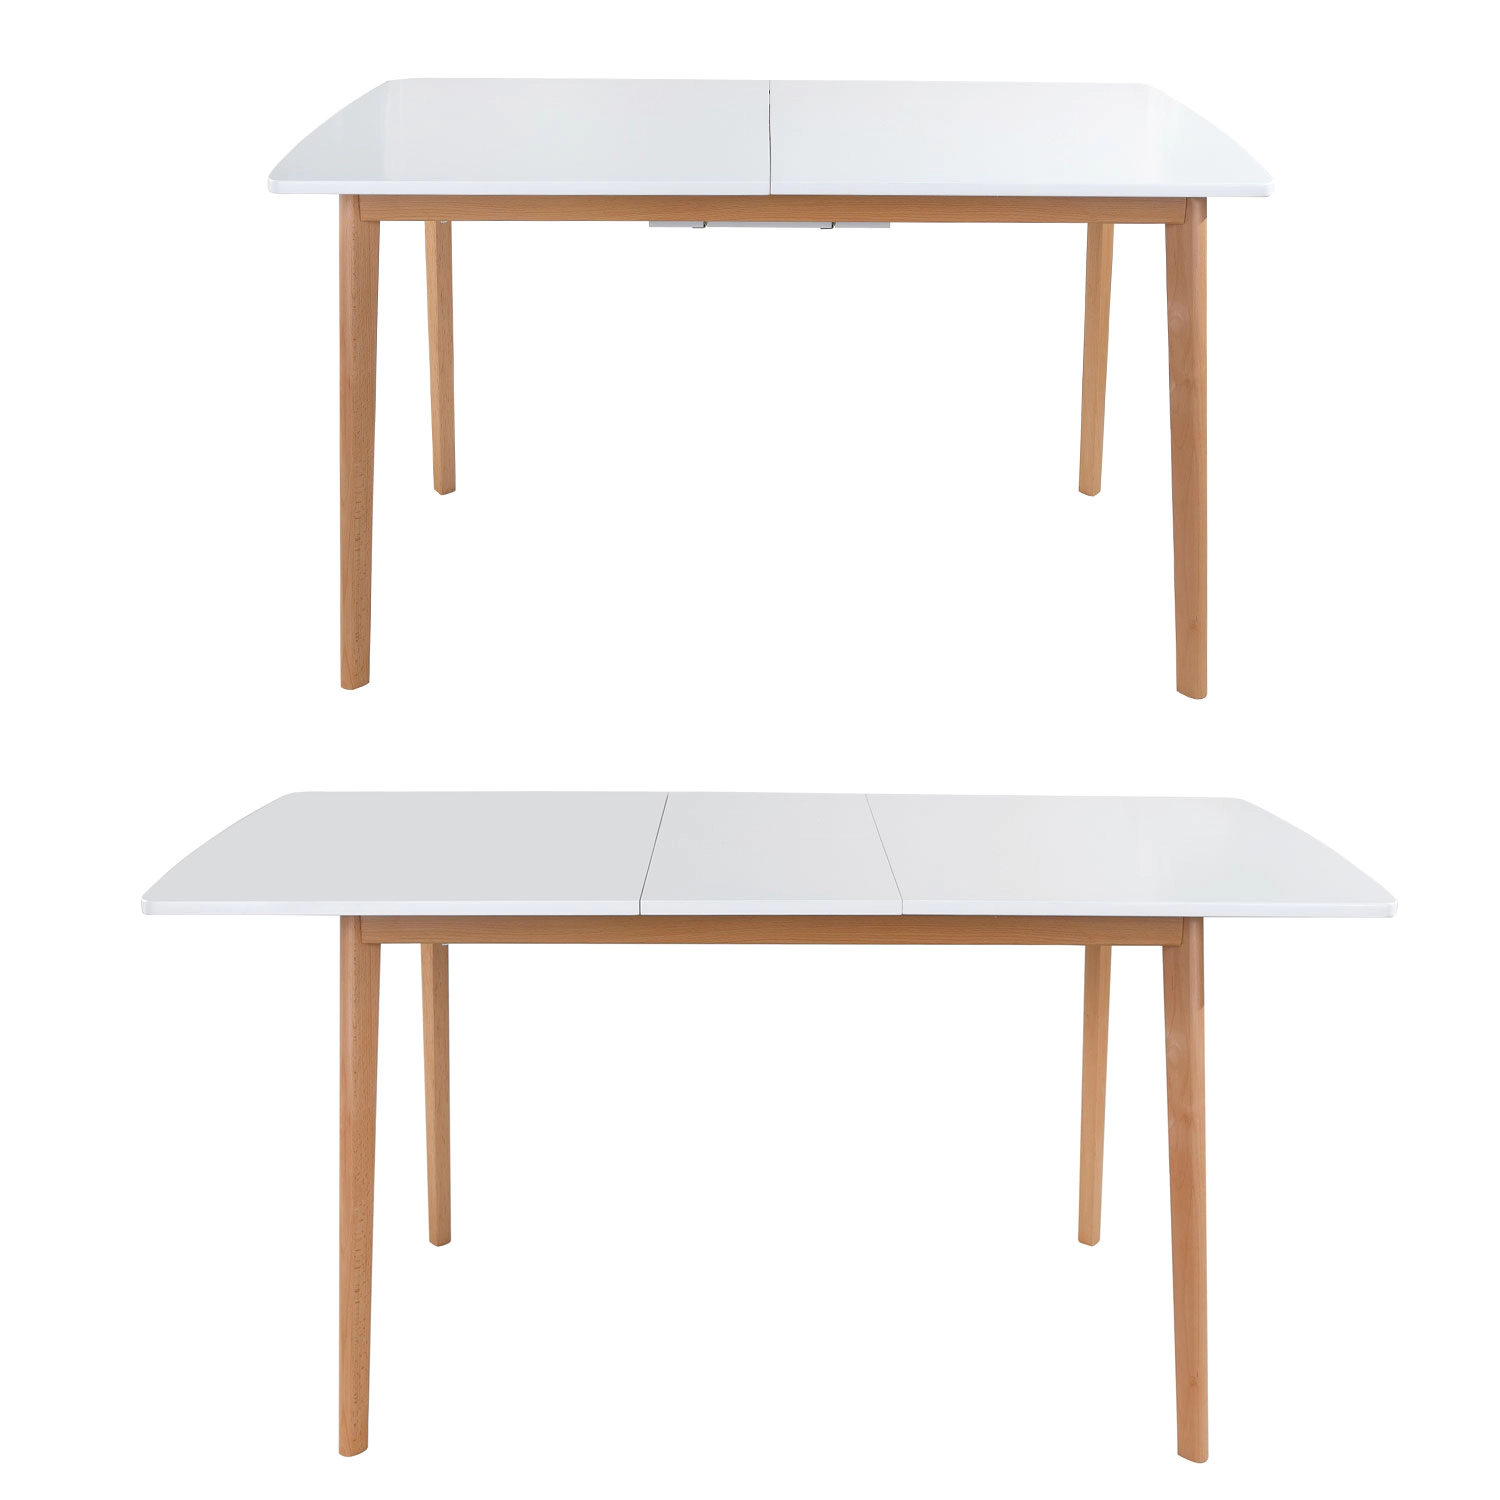 Ensemble table extensible 120/160cm HELGA et 6 chaises NORA blanc